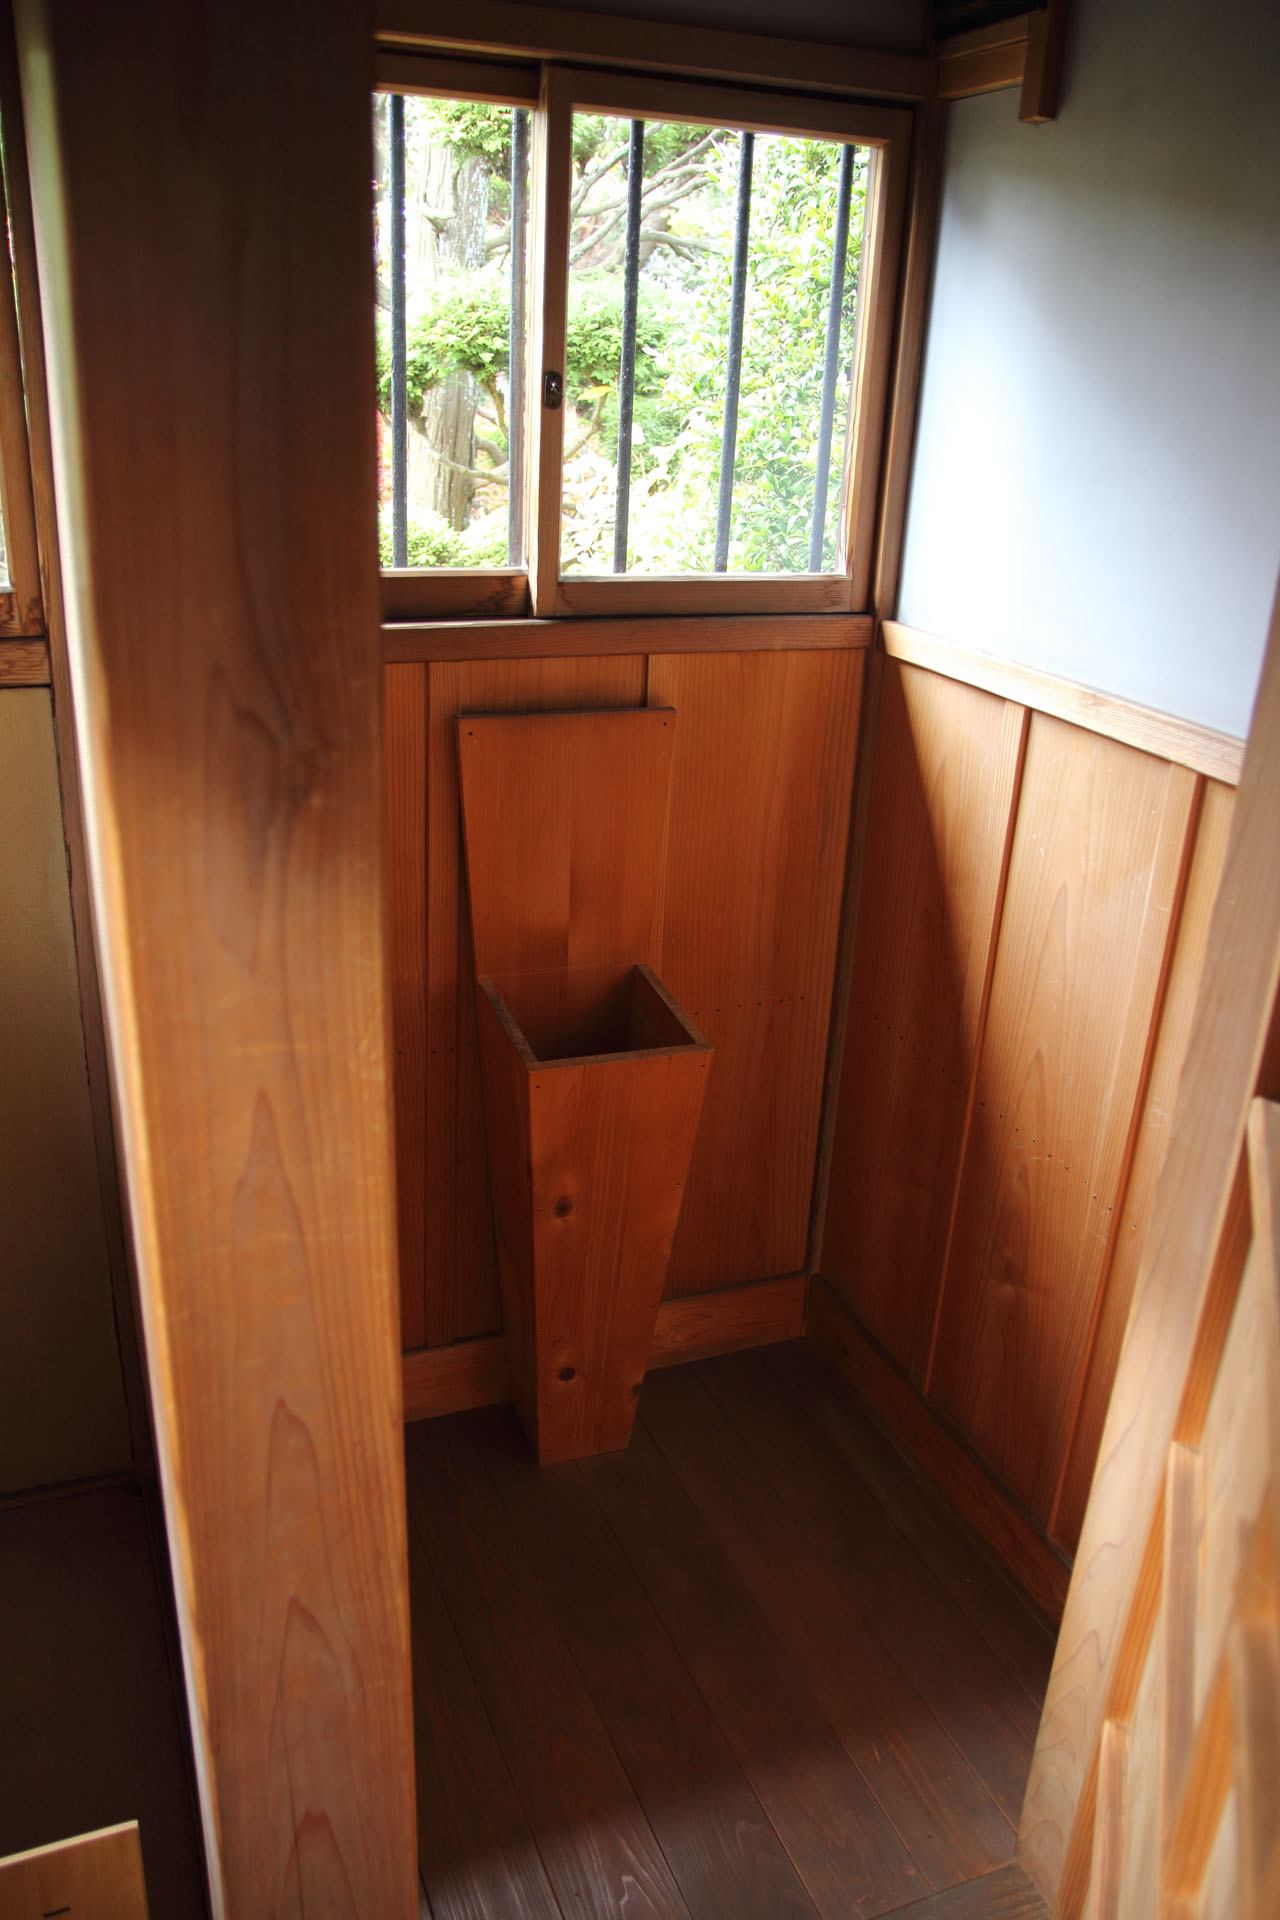 江戸時代のトイレはどんな感じだった？【前編】 Q&Aなうで質問 日本は文化的だった